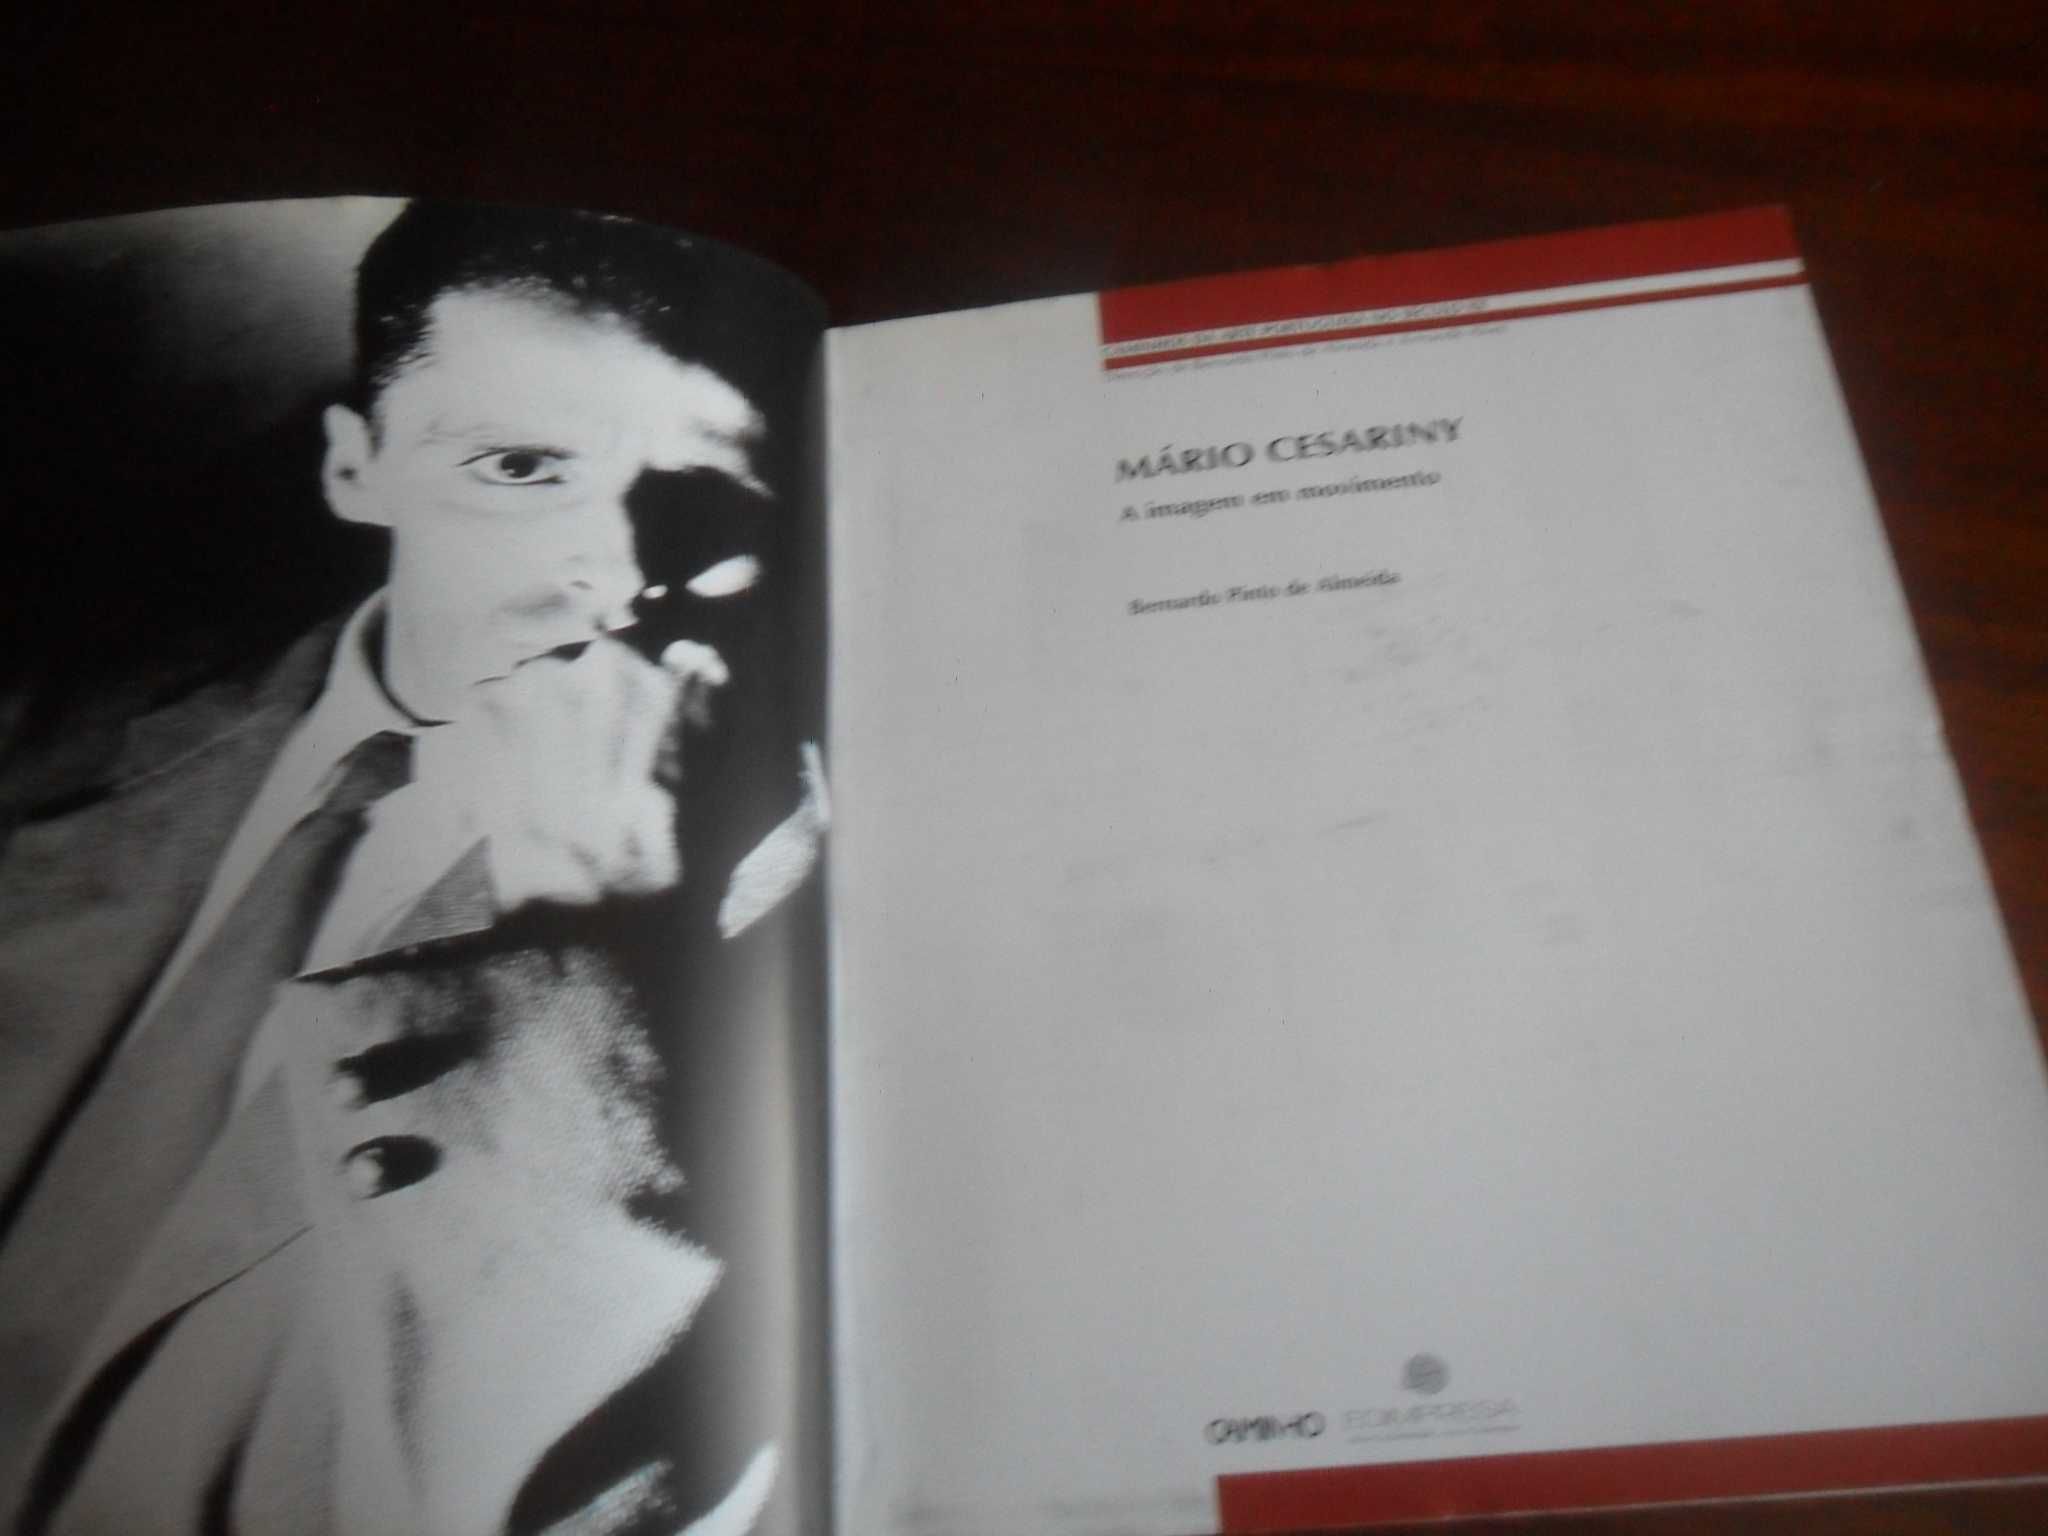 "Mário Cesariny"  de Bernardo Pinto de Almeida - 1ª Edição de 2005